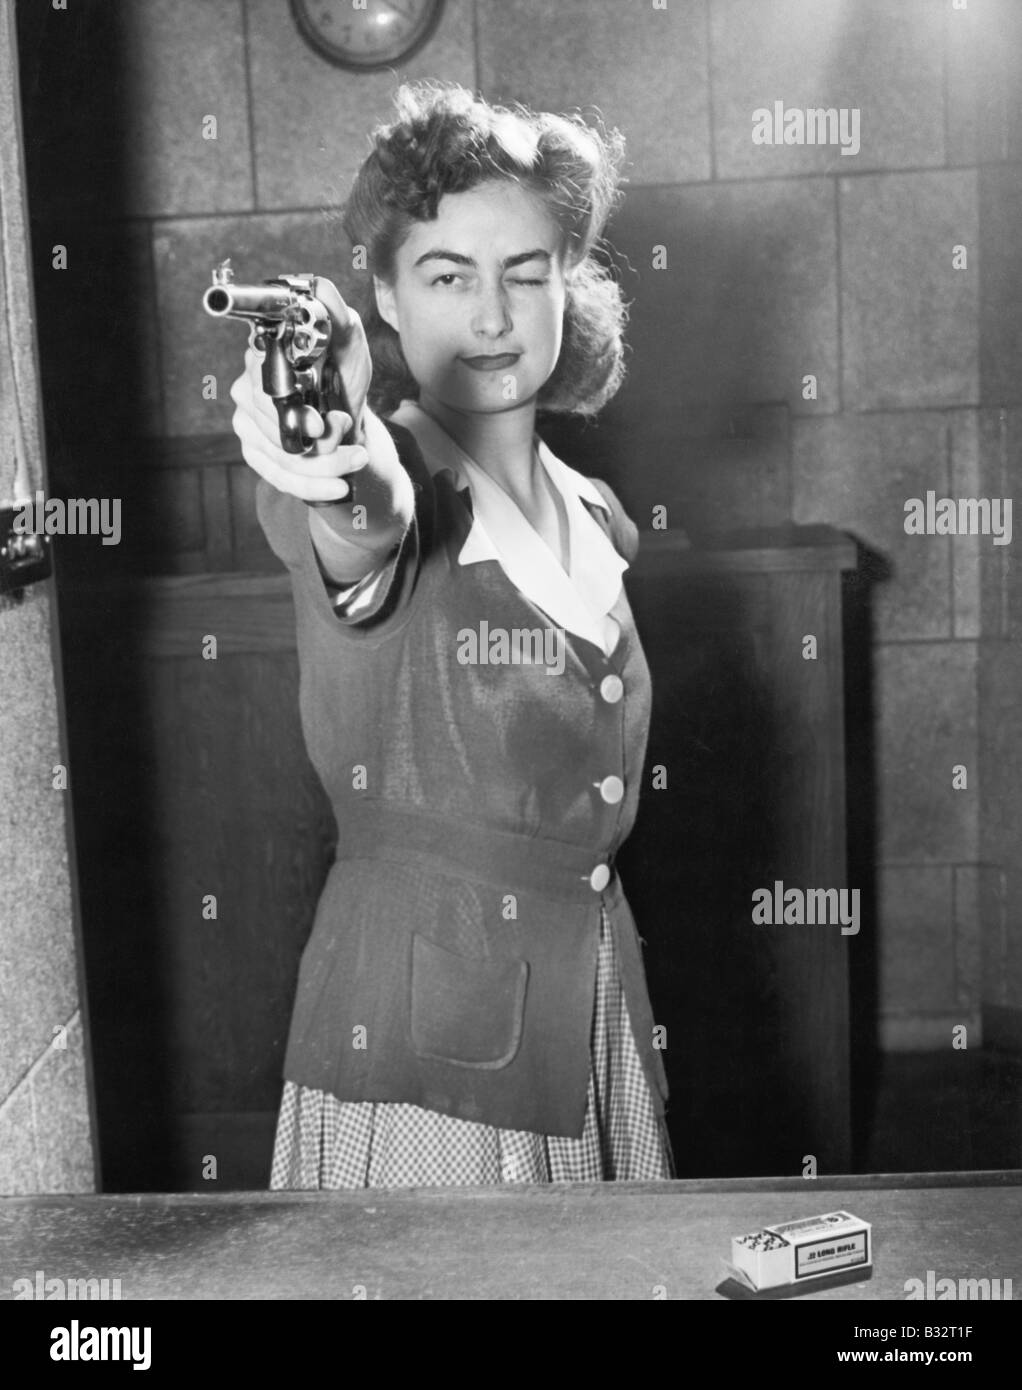 Junge Frau mit dem Ziel, mit einer Pistole Stockfoto